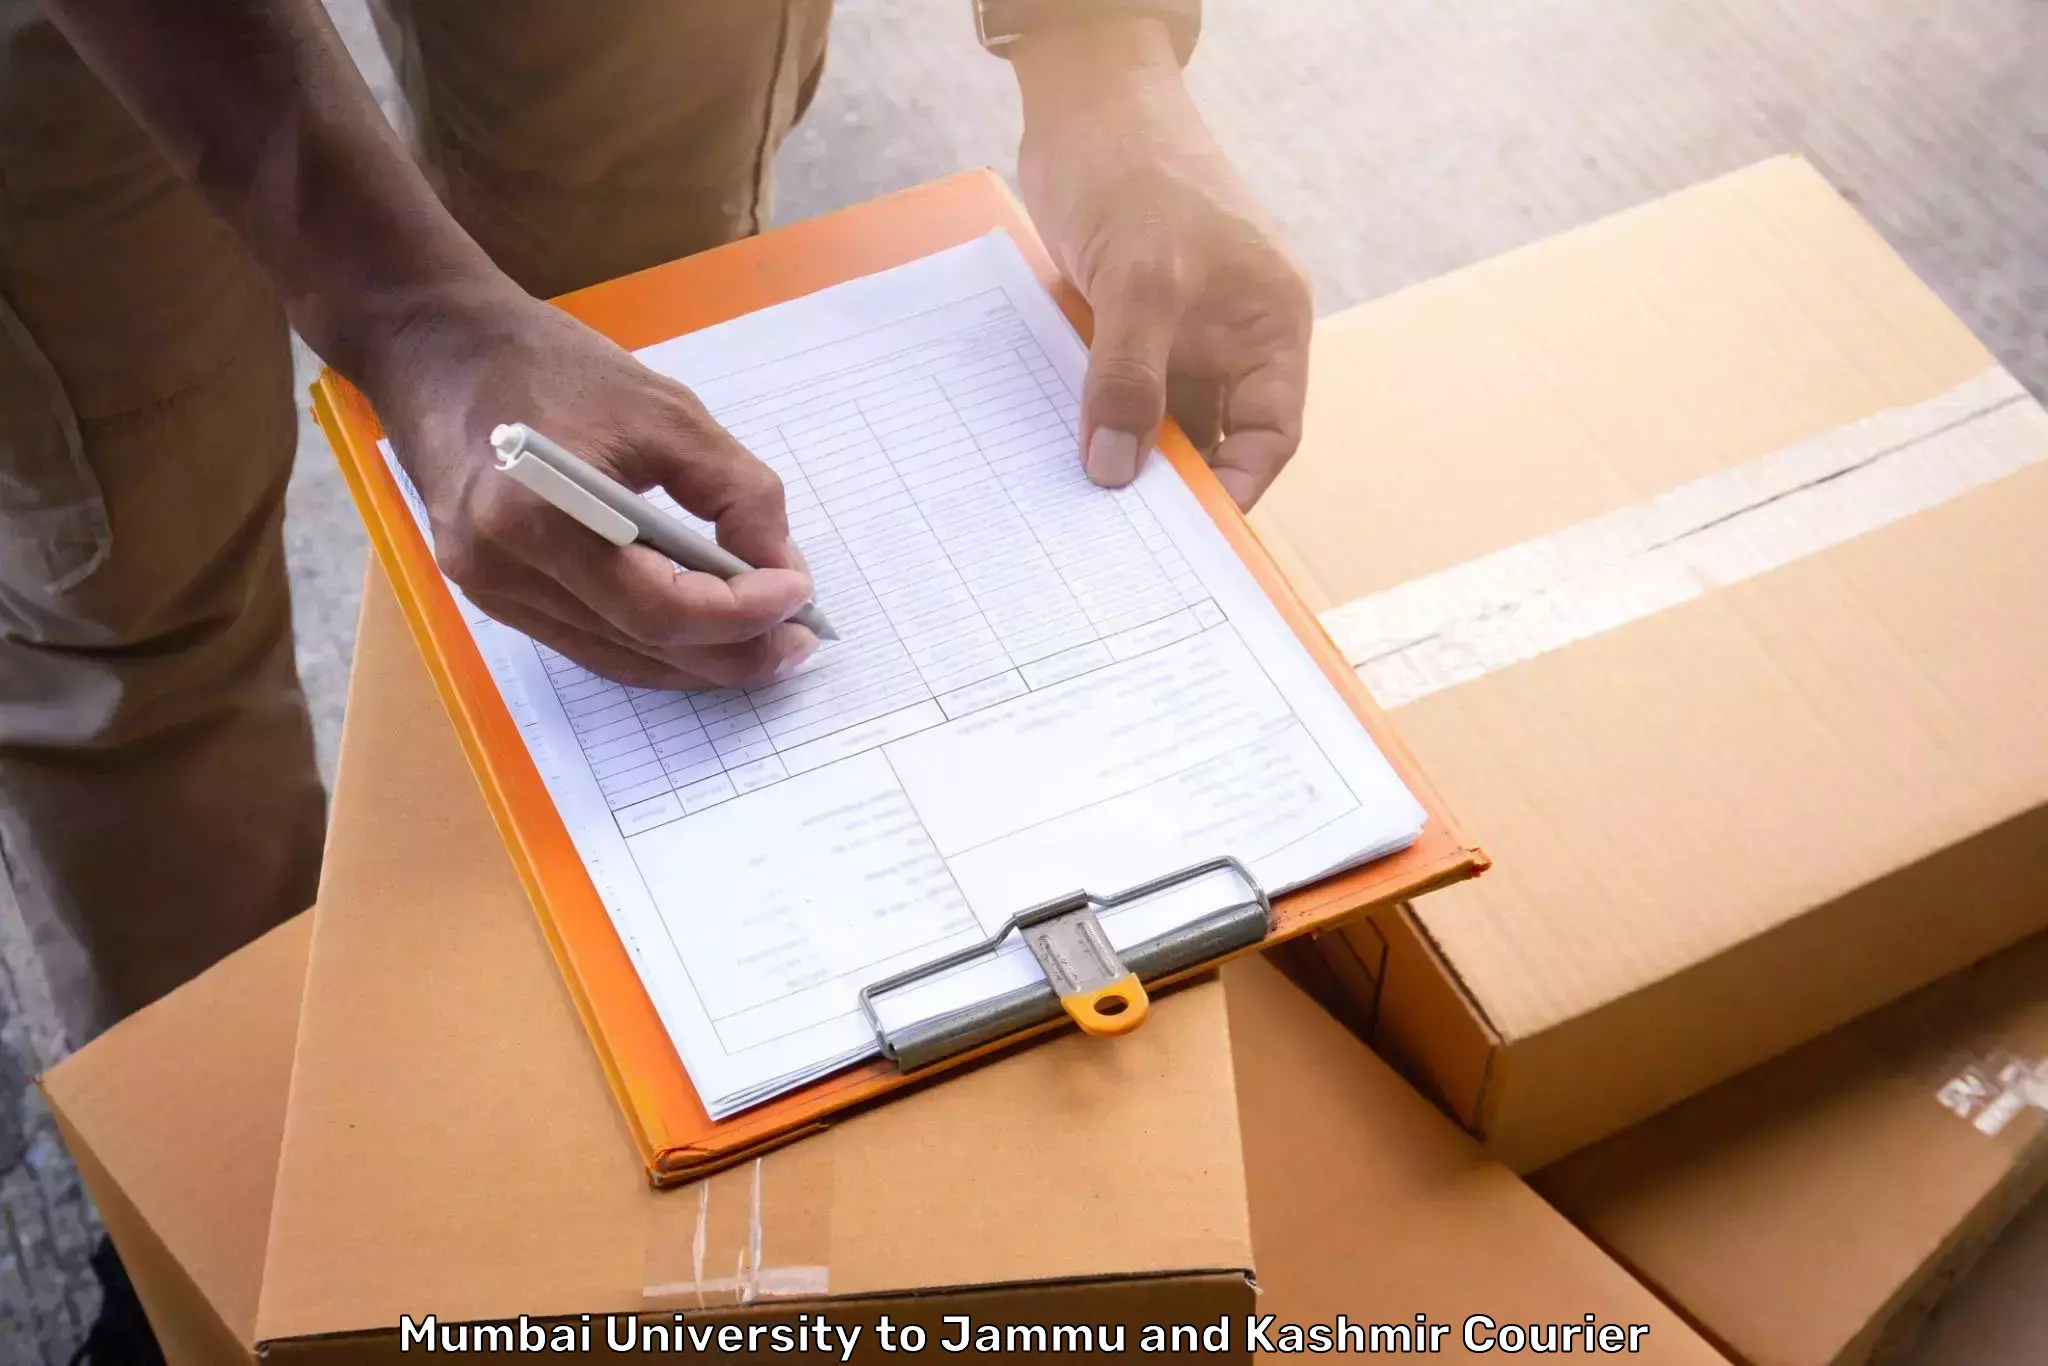 Baggage courier logistics Mumbai University to Jammu and Kashmir